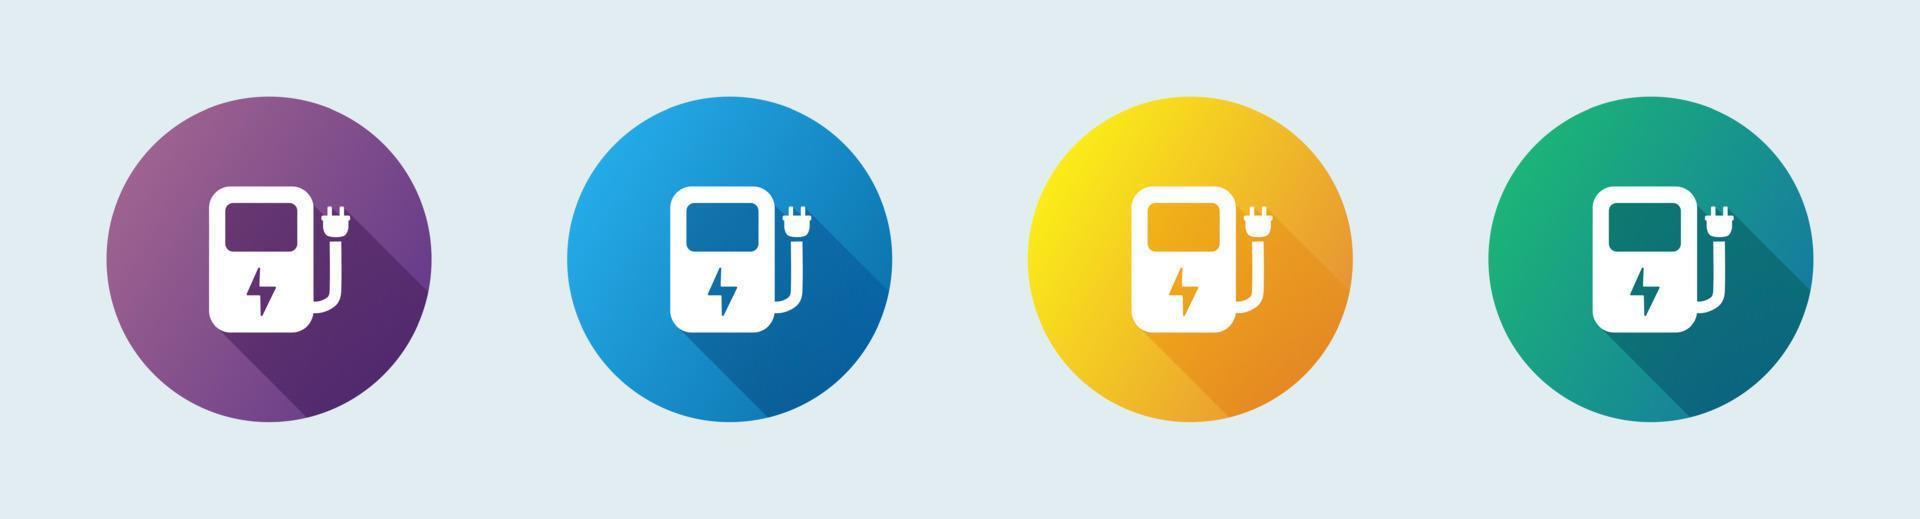 ponto de carga para veículos elétricos ou ícone de vetor plano de carros para aplicativos e sites.